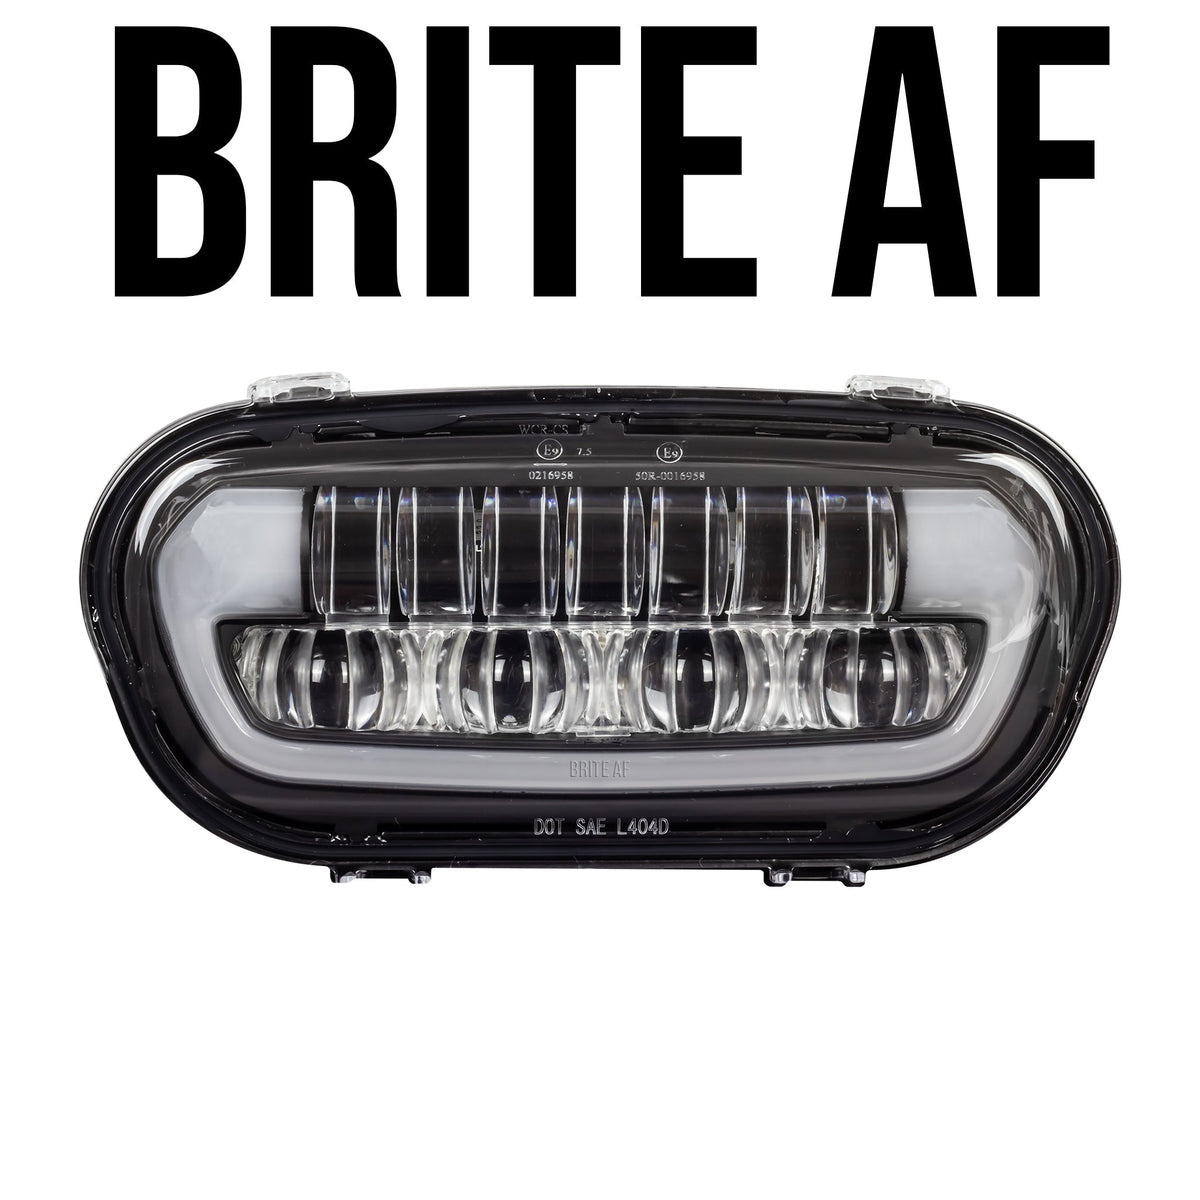 Eagle Lights BRITE AF LED Headlight for 2008 - 2017 Harley Davidson Fat Bob Models